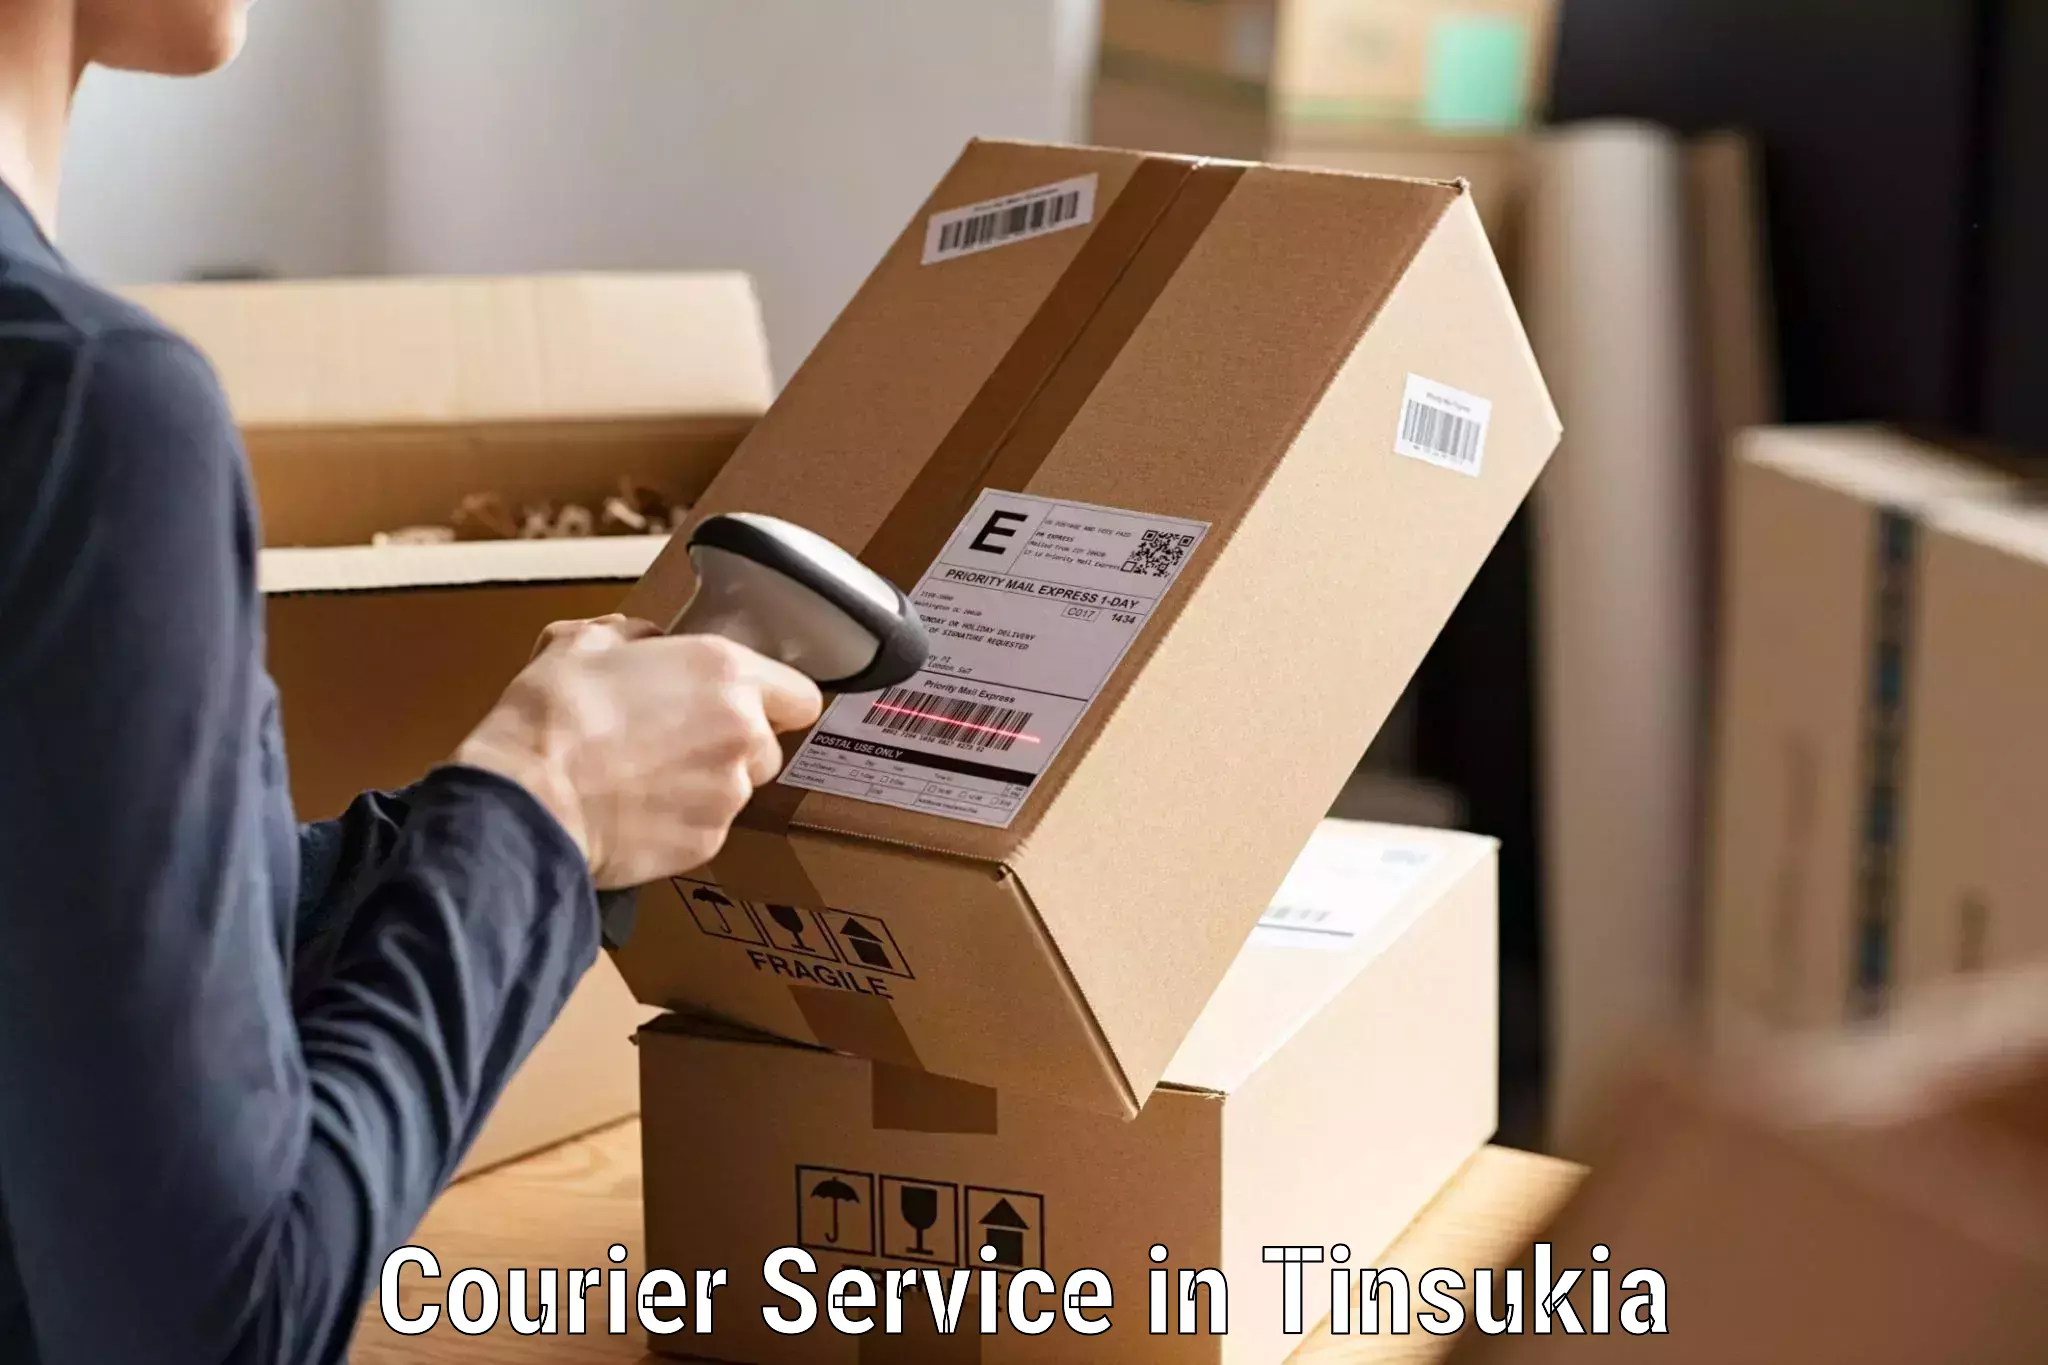 Efficient parcel transport in Tinsukia